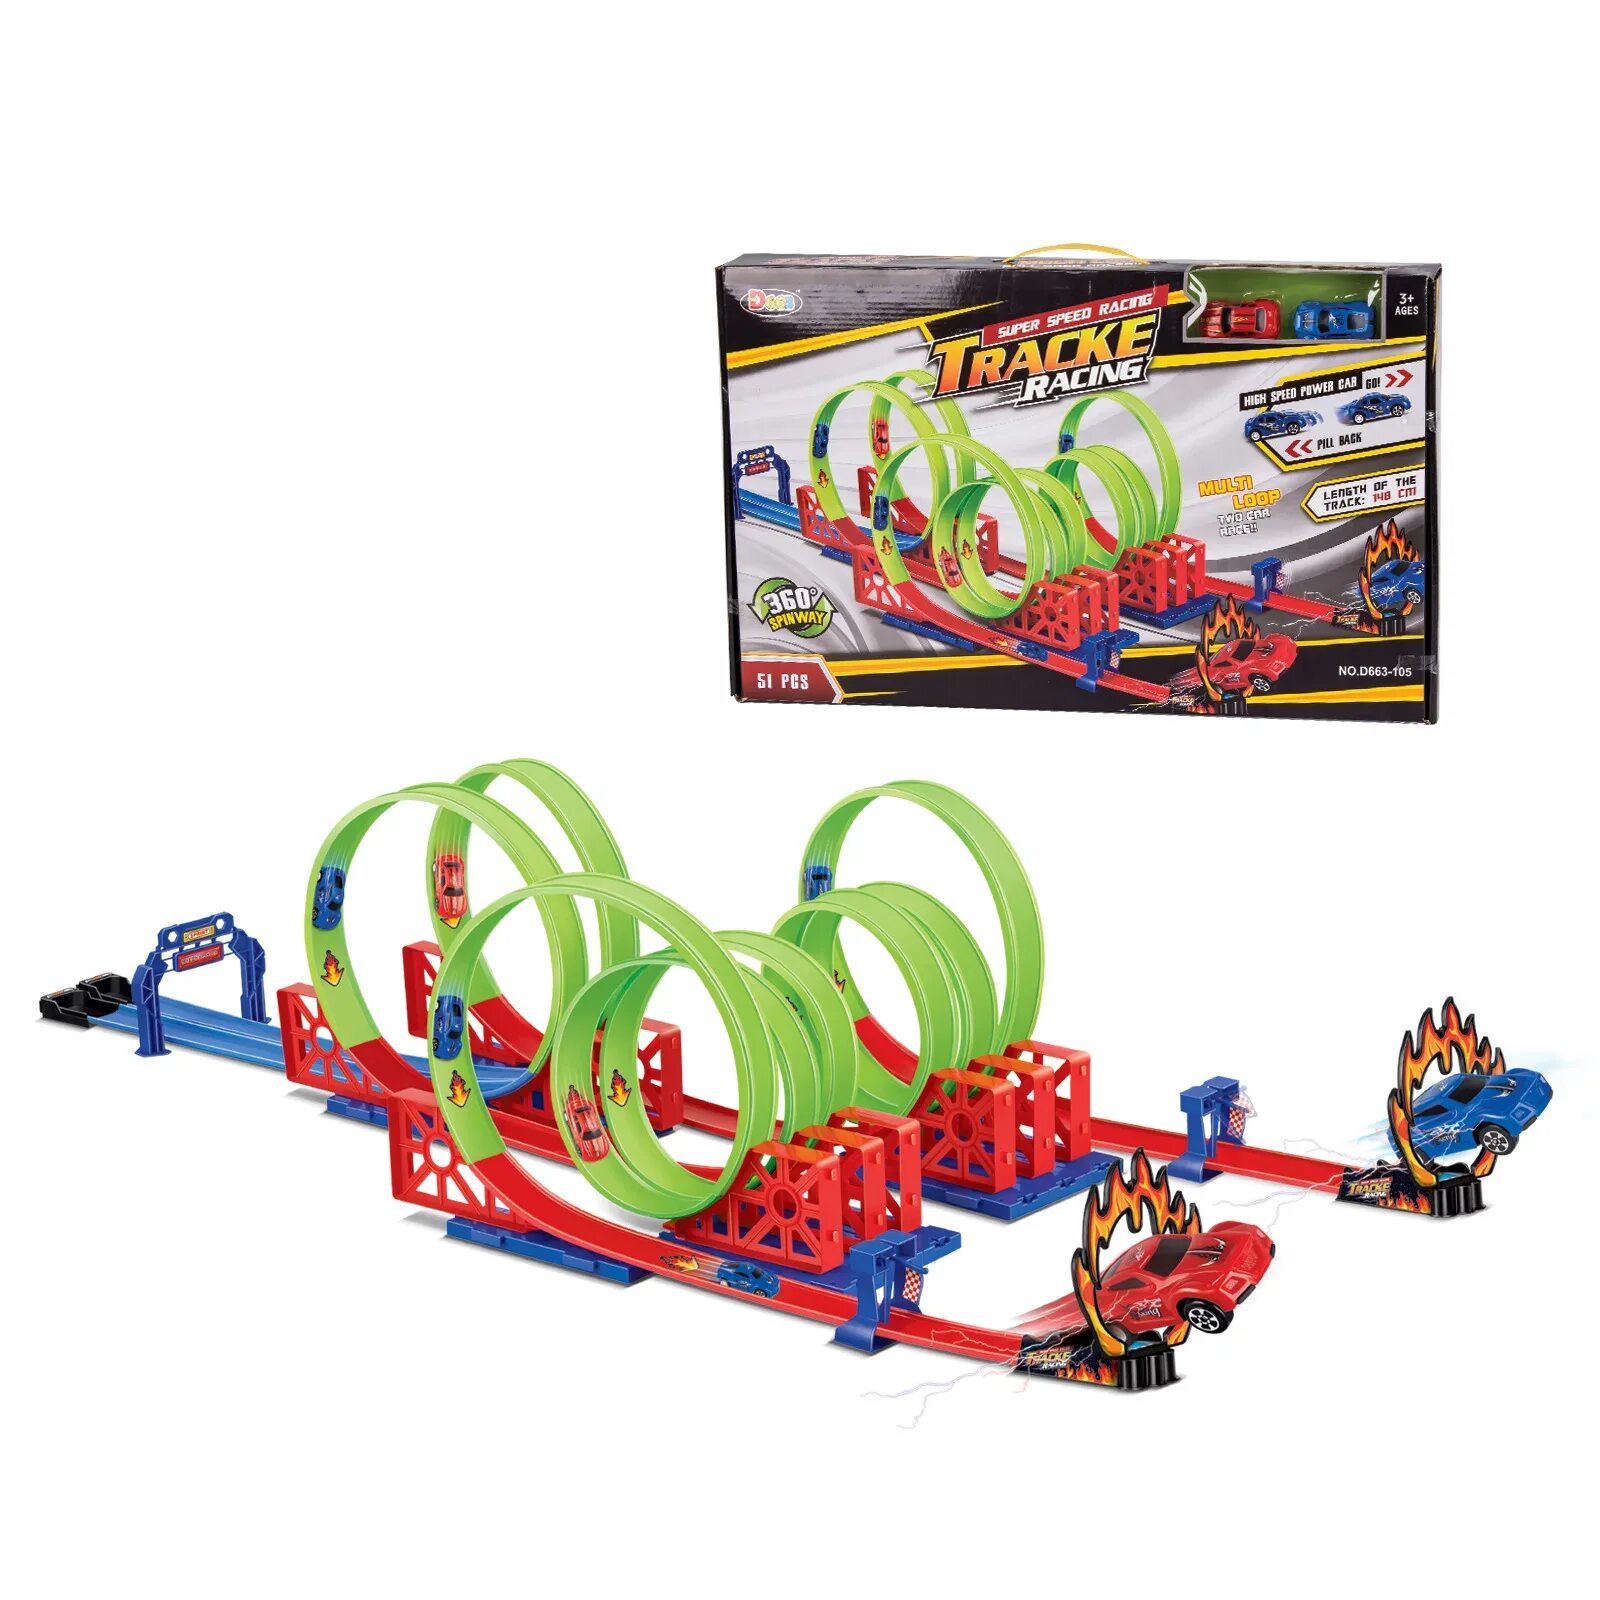 Track Racing игрушка. Супер трек игрушка. 2157 Трек игрушечный. Speed Racing игрушка для детей. Кольцевой трек